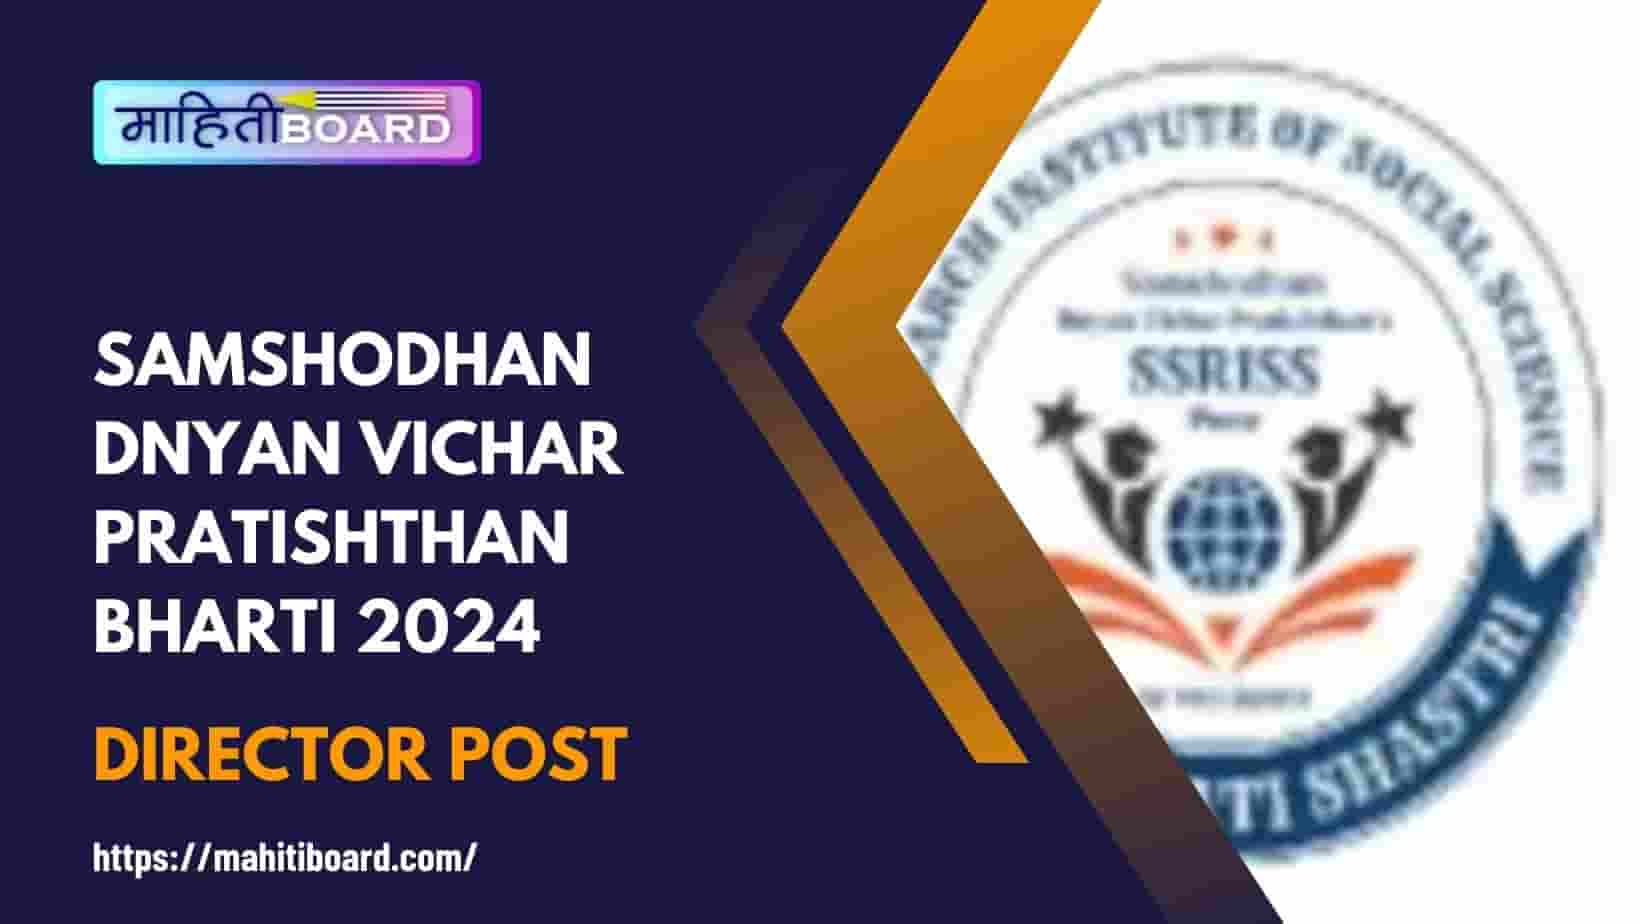 Samshodhan Dnyan Vichar Pratishthan Bharti 2024